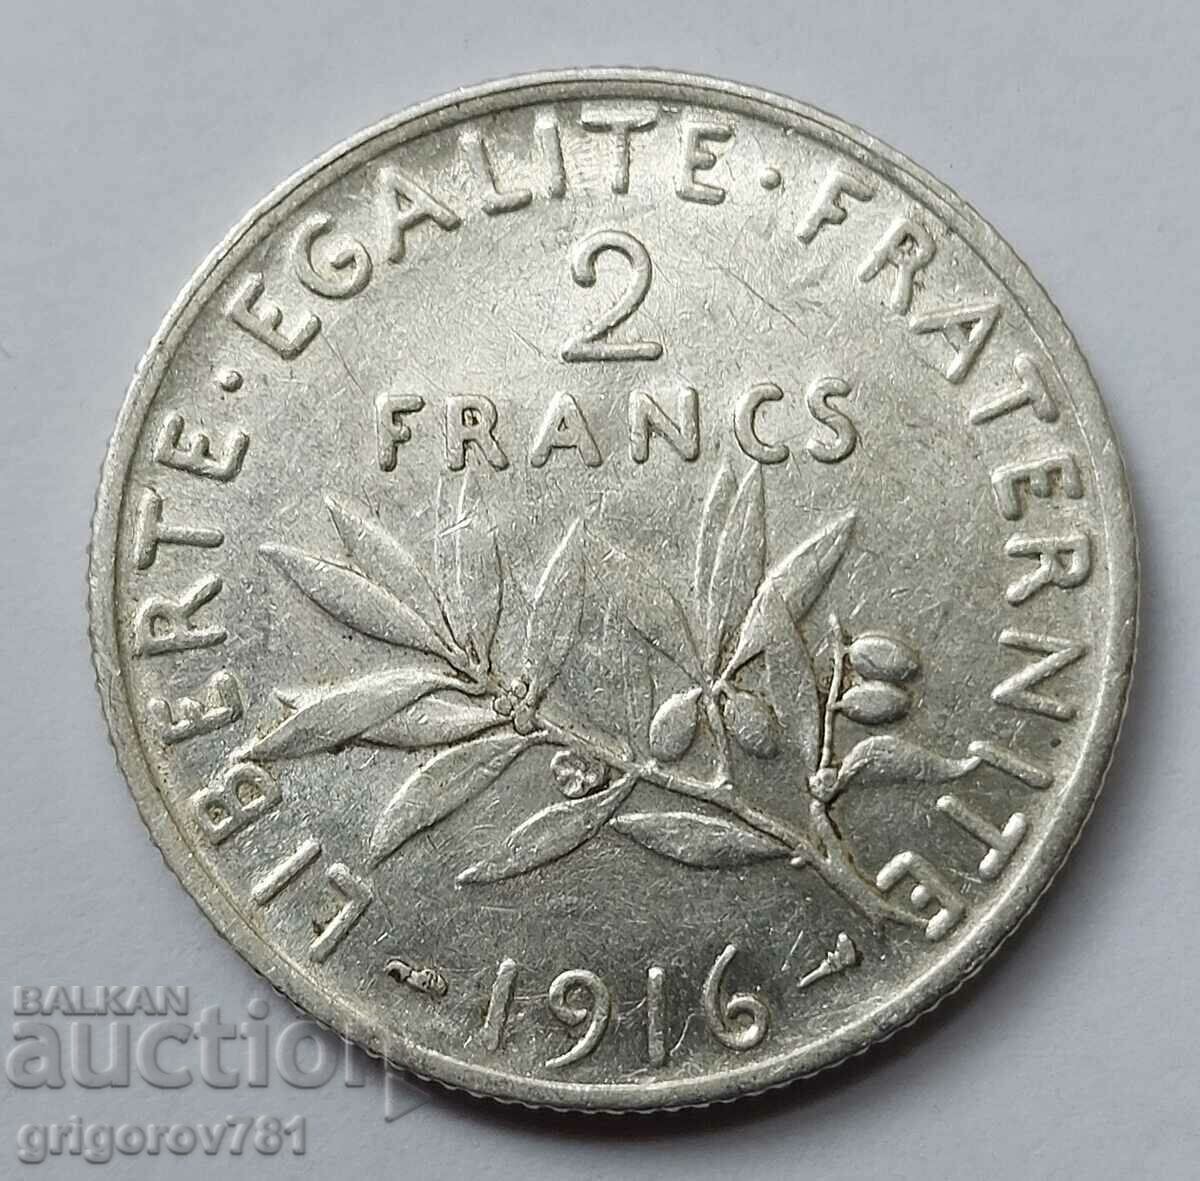 2 Φράγκα Ασήμι Γαλλία 1916 - Ασημένιο νόμισμα #80